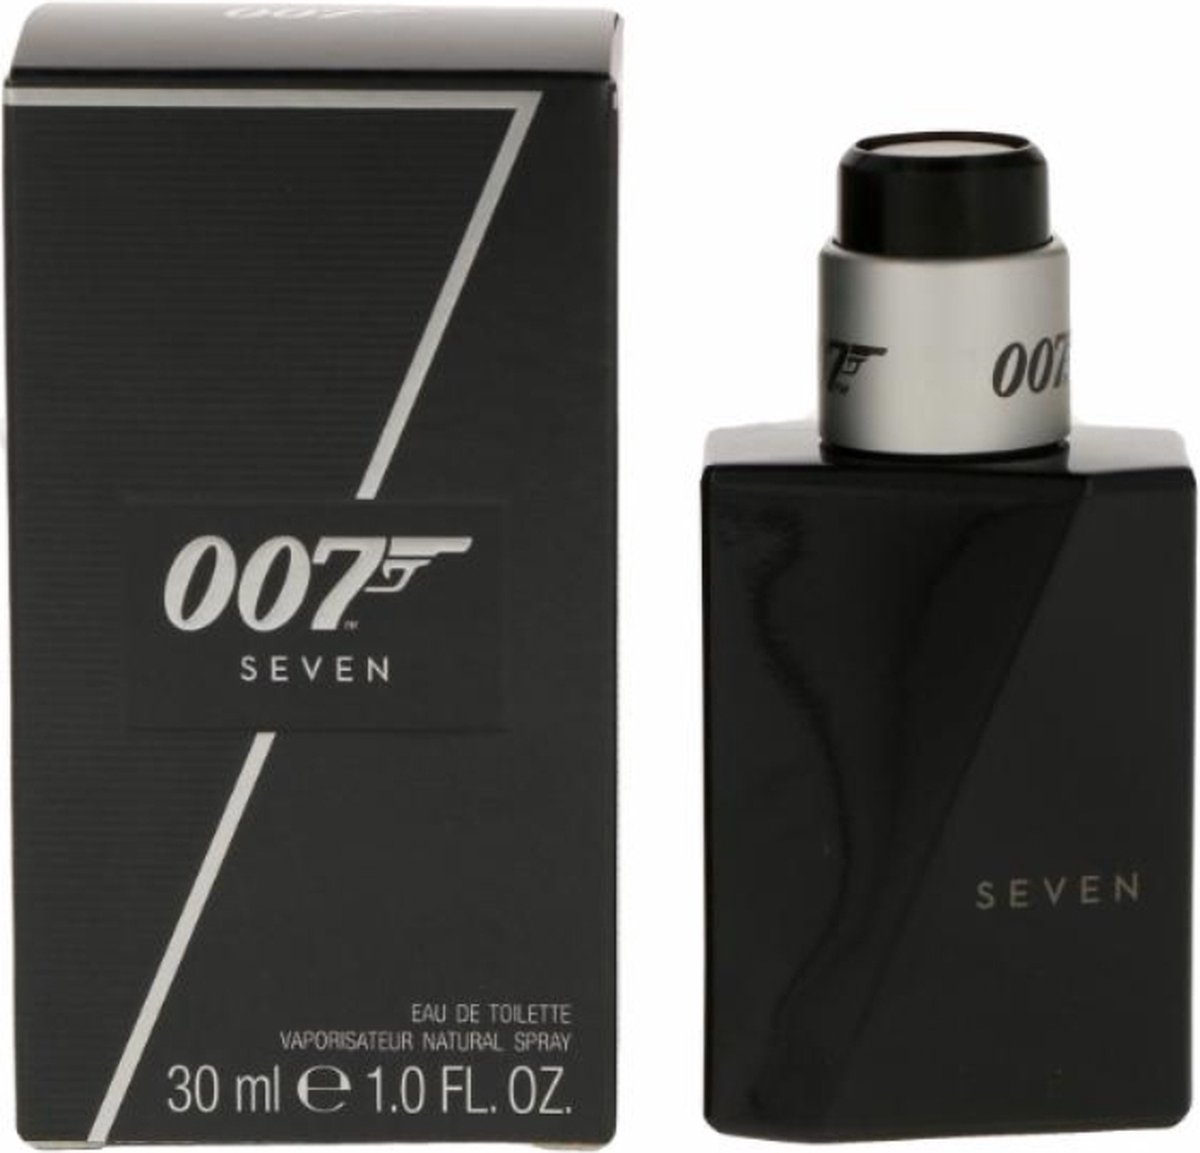 James Bond 007 Seven Eau de toilette 30 ml | bol.com